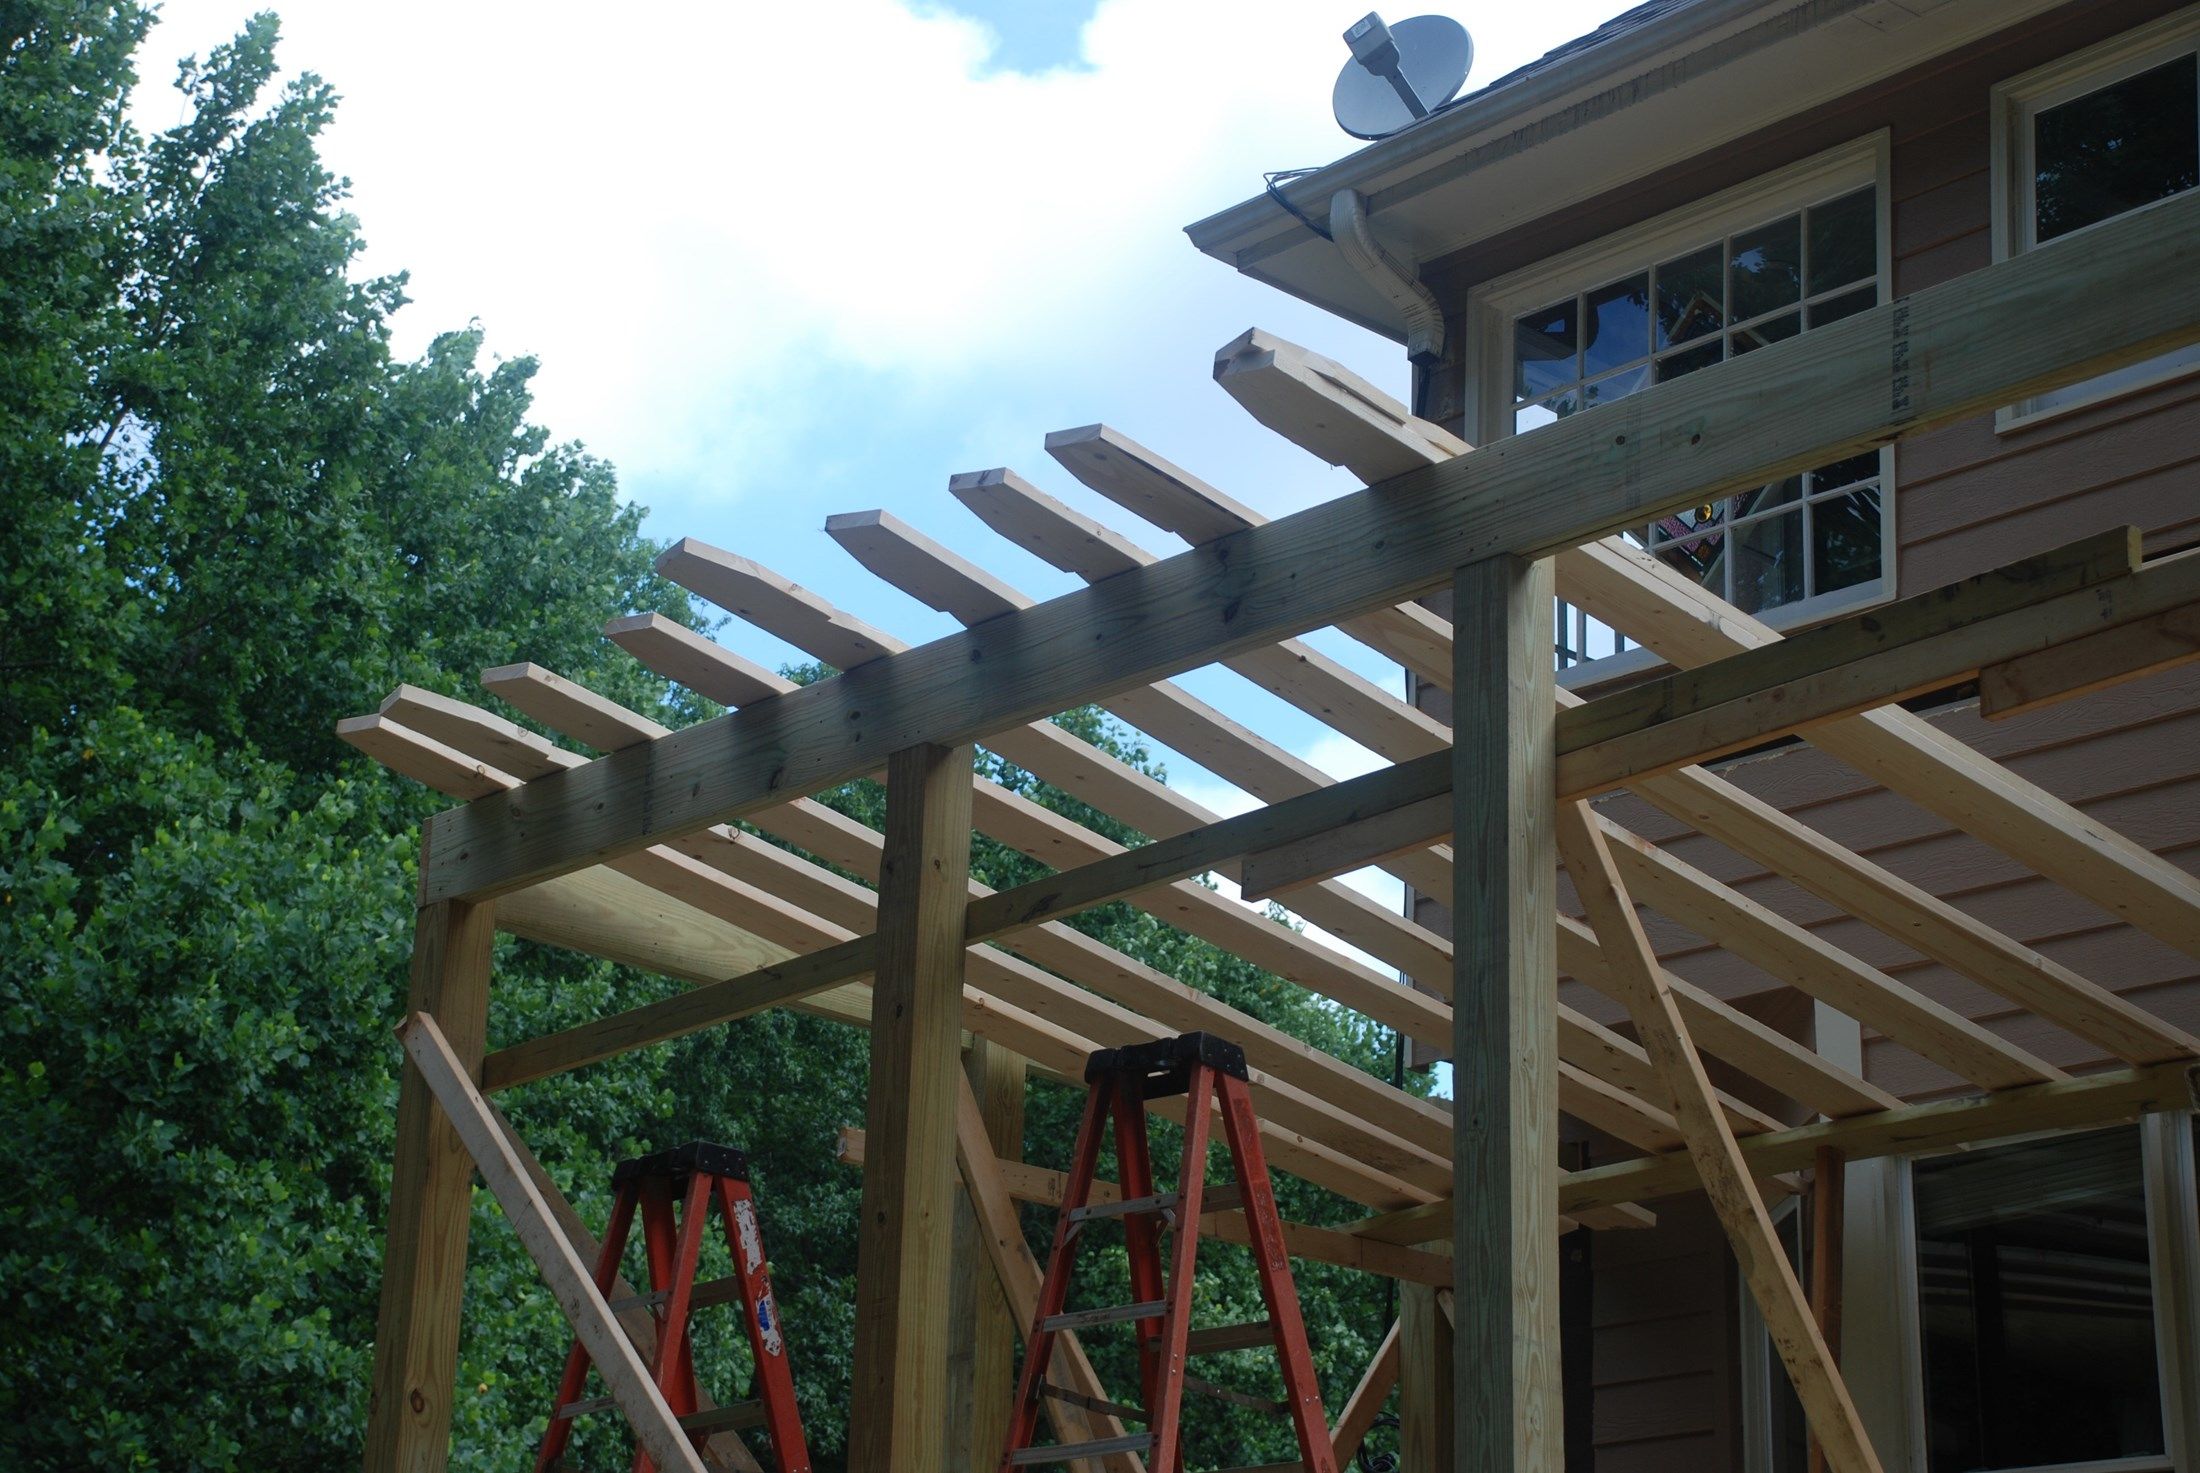 How To Build a Shed Roof Over A Deck | Decks.com